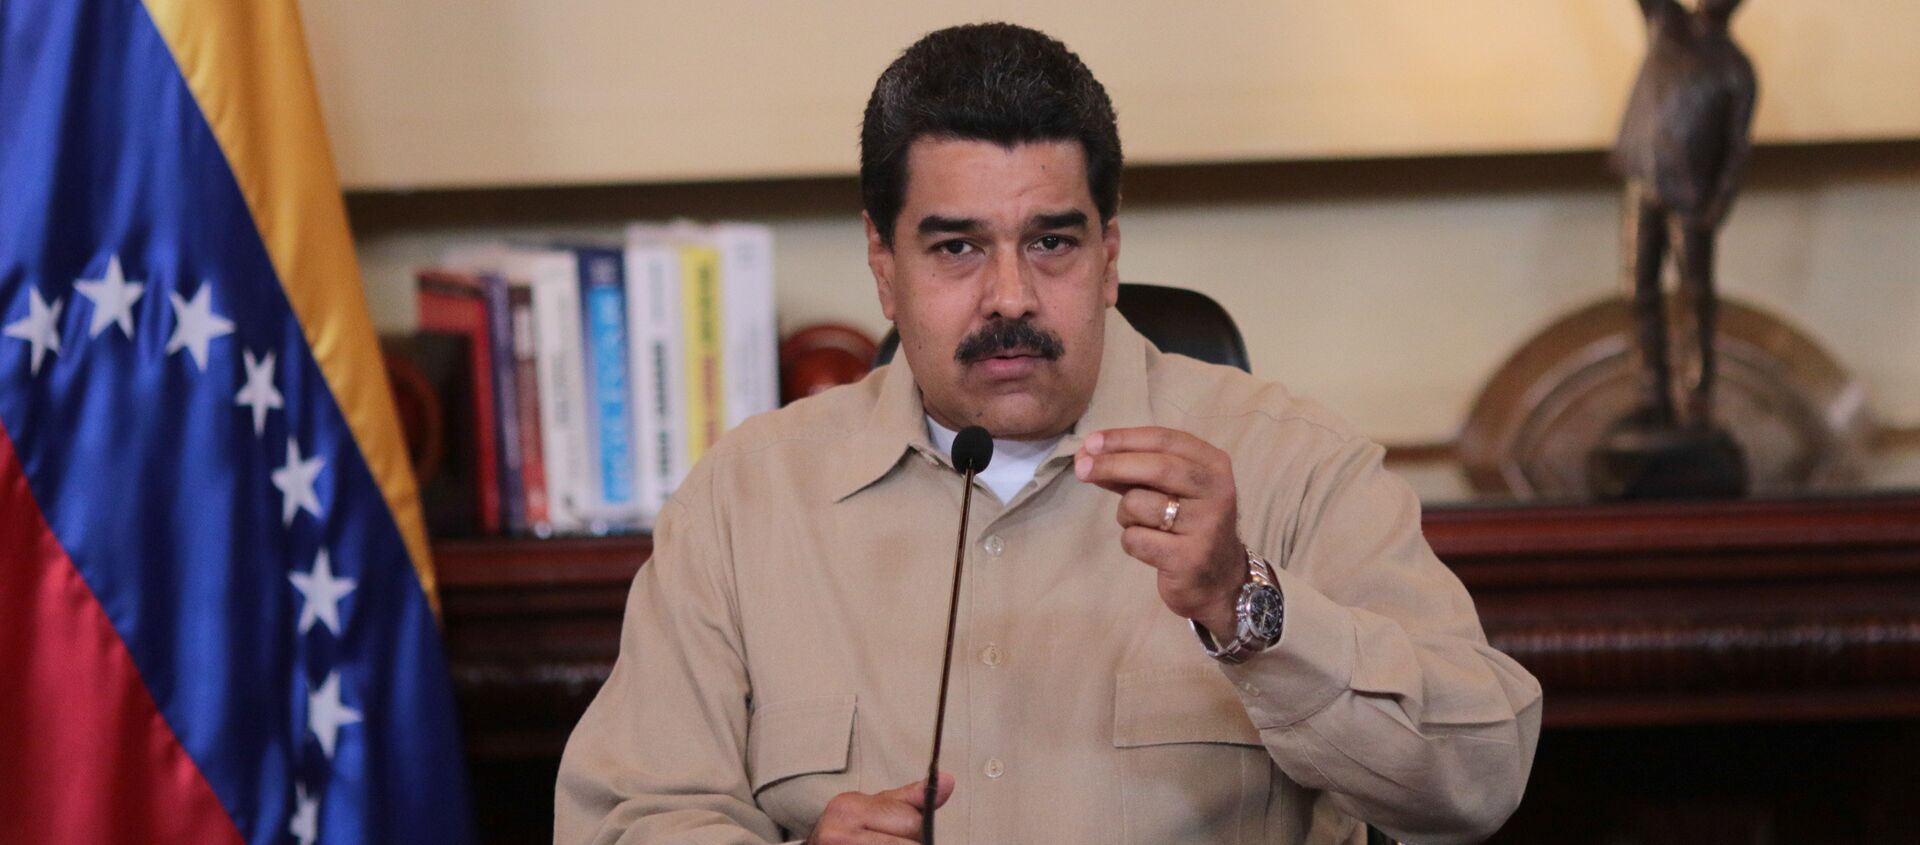 Nicolás Maduro, presidente de Venezuela - Sputnik Mundo, 1920, 03.09.2020